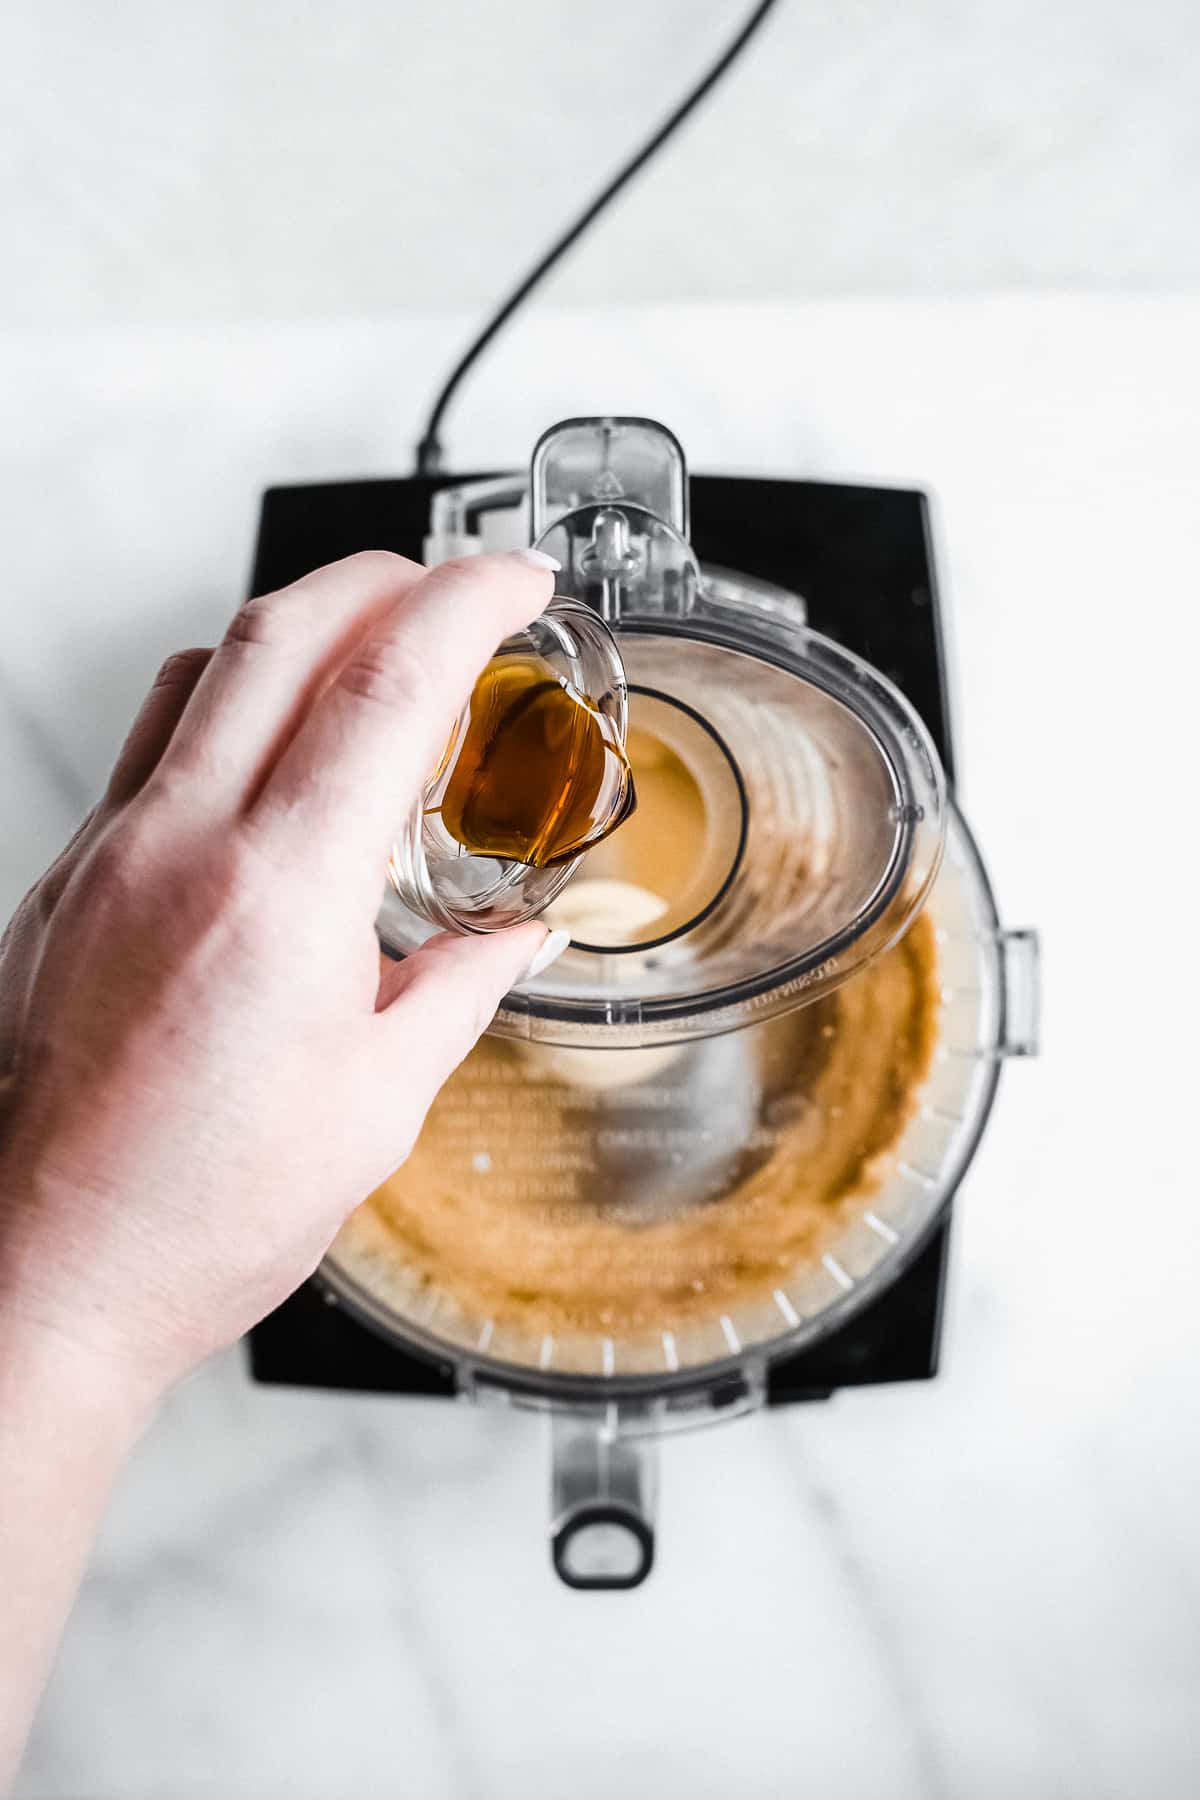 Person pouring vanilla into a food processor.